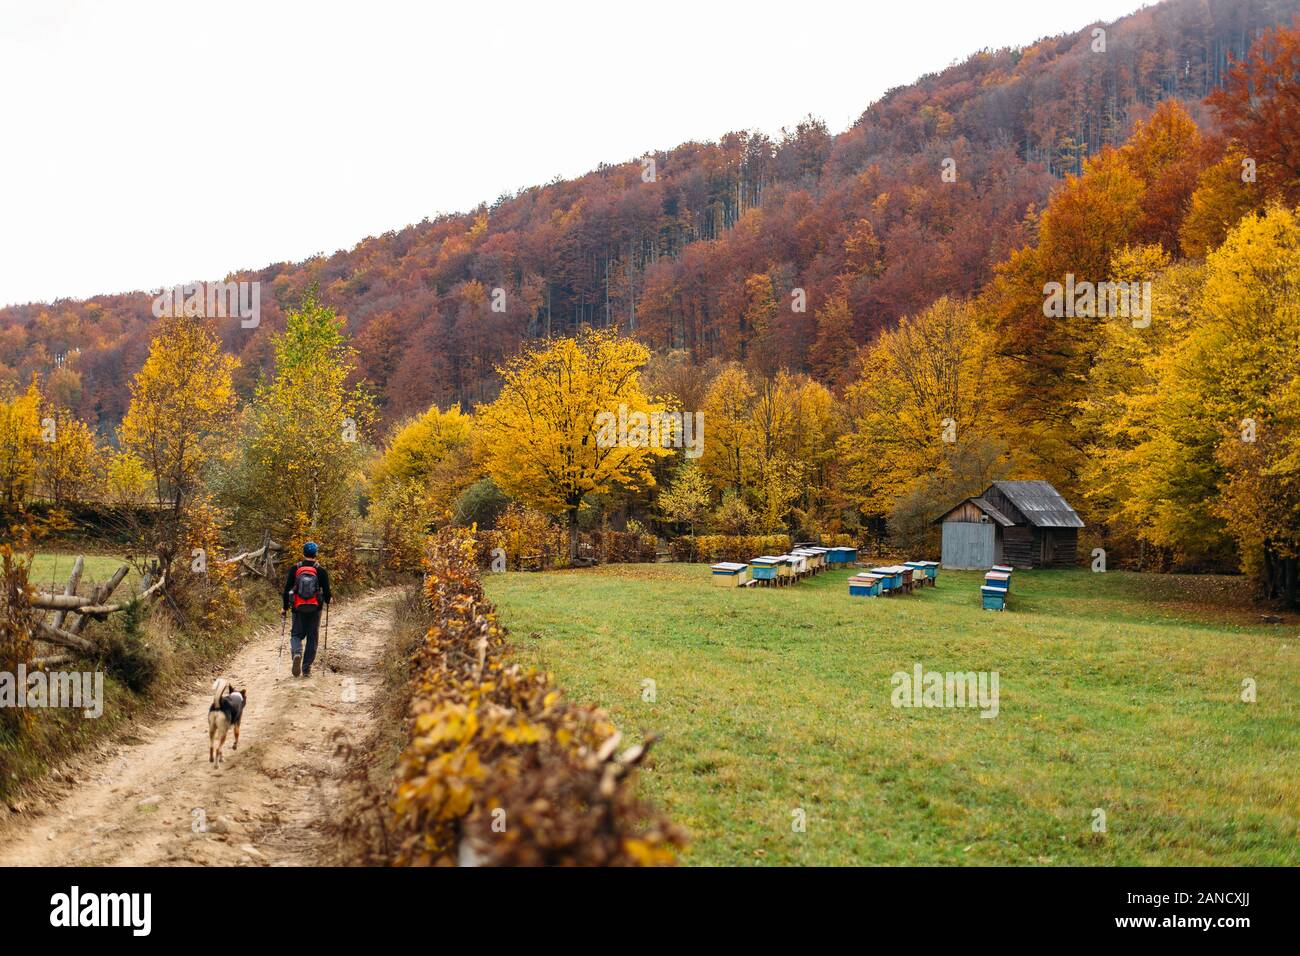 Wanderer und Hundespaziergängen auf der Straße in der Nähe von Bienenstöcken im Herbstwald Stockfoto